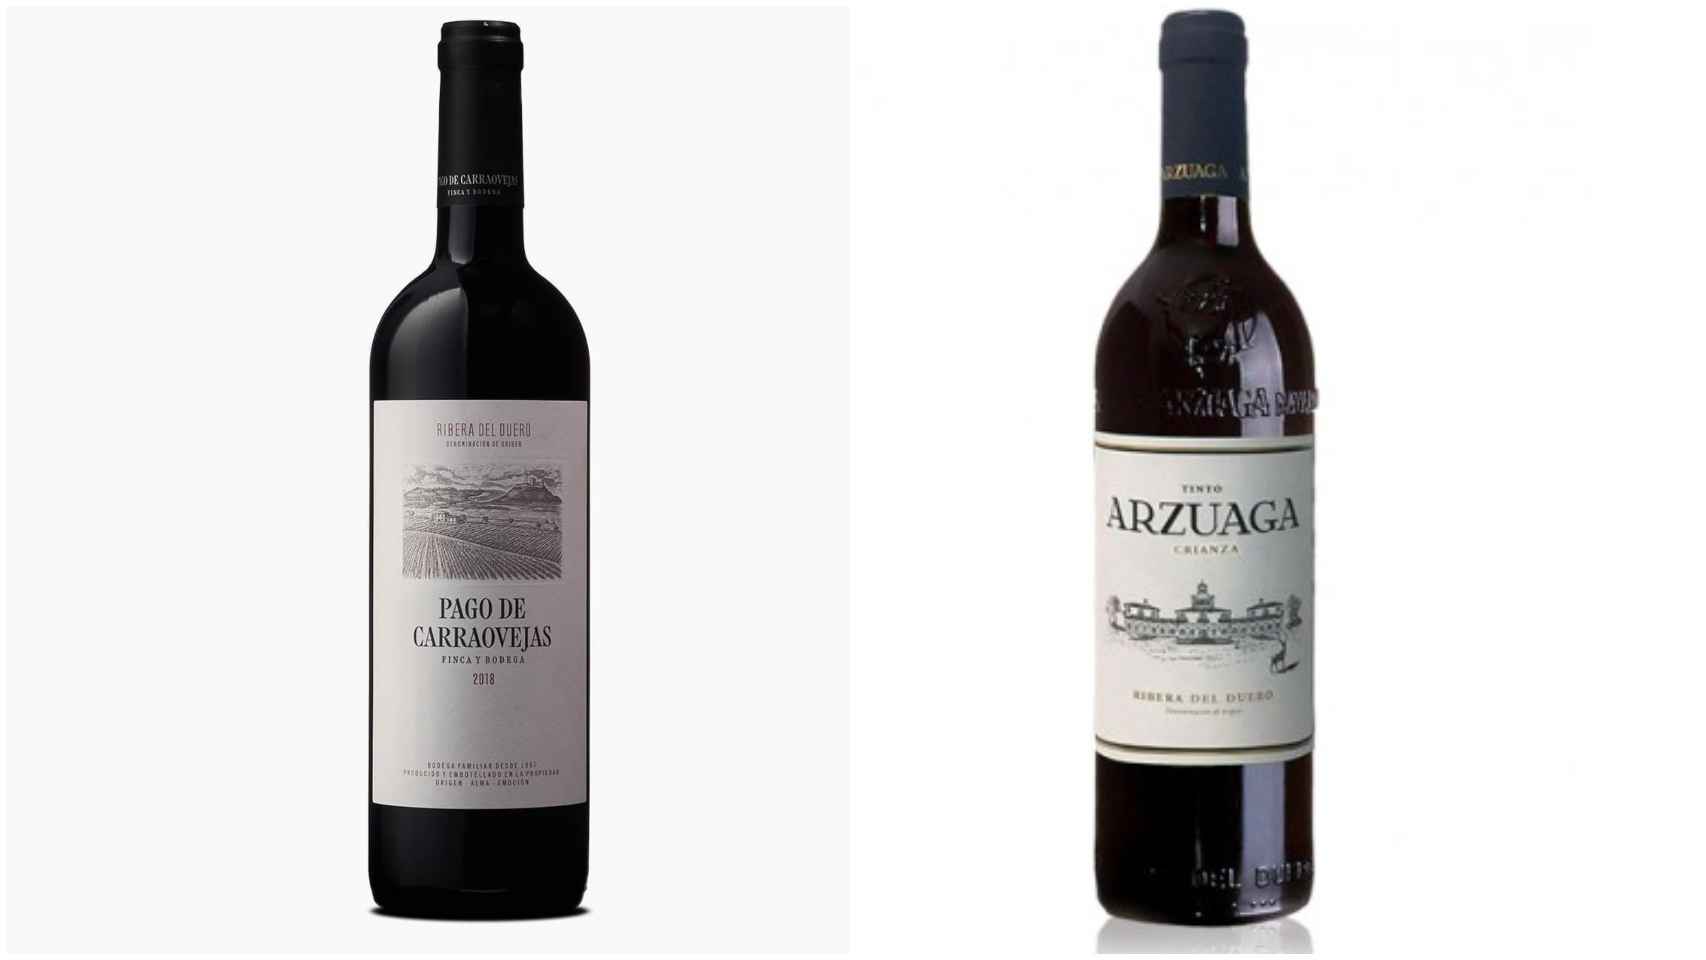 A la izquierda, el Pago de Carrovejas y, a la derecha, el Arzuaga, dos vinos que le gustan a Carlos Sobera.